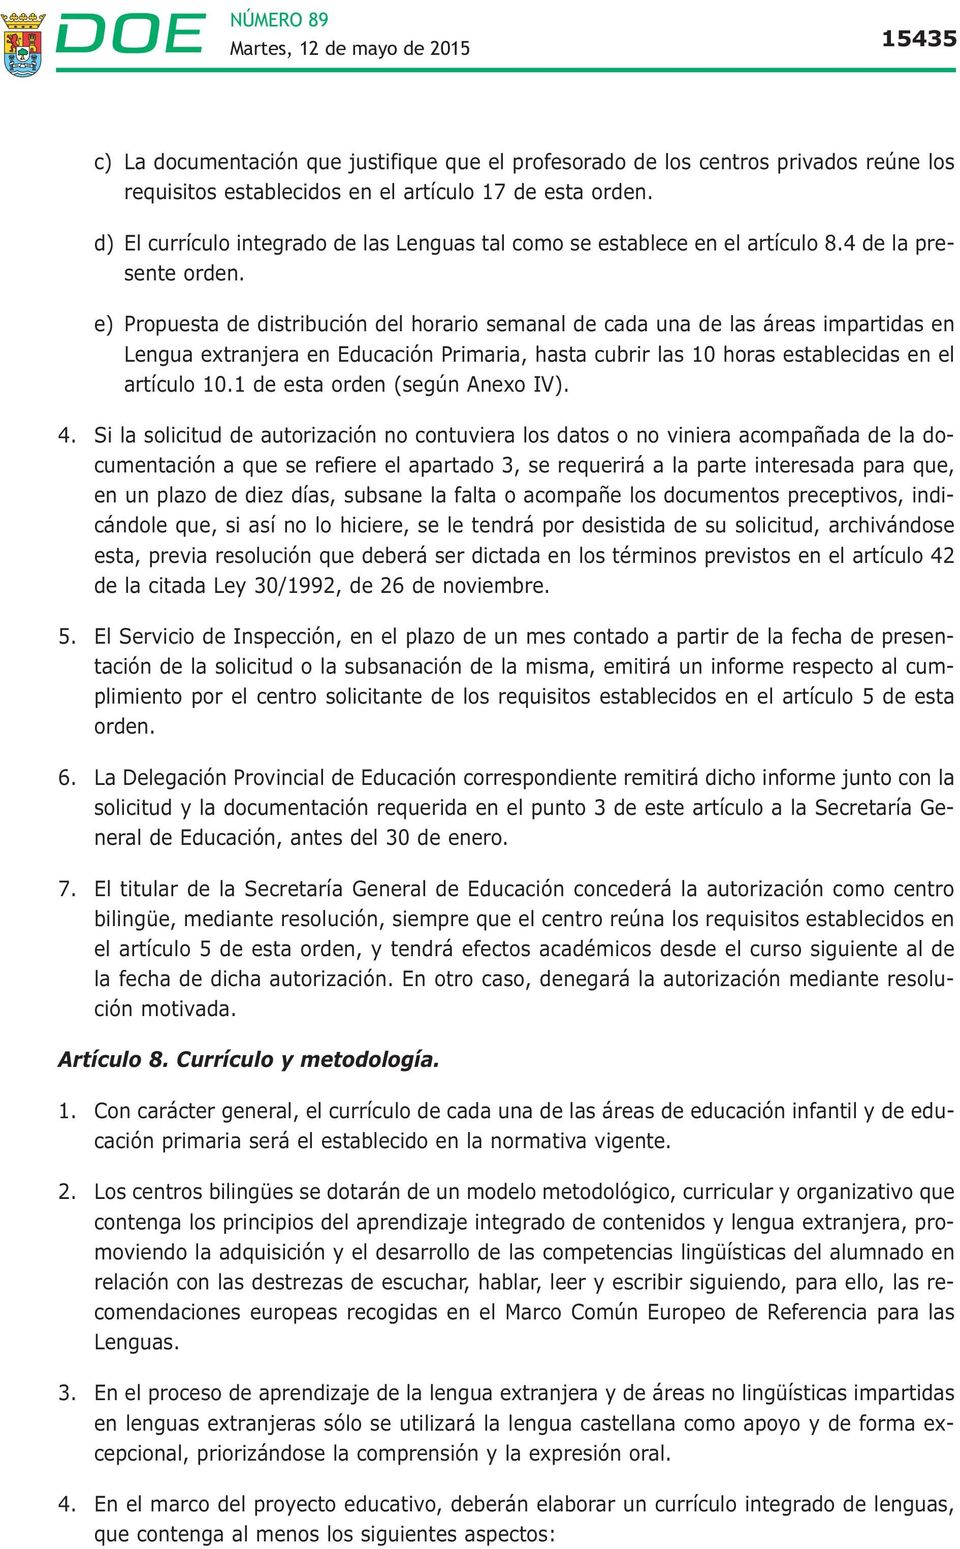 e) Propuesta de distribución del horario semanal de cada una de las áreas impartidas en Lengua extranjera en Educación Primaria, hasta cubrir las 10 horas establecidas en el artículo 10.